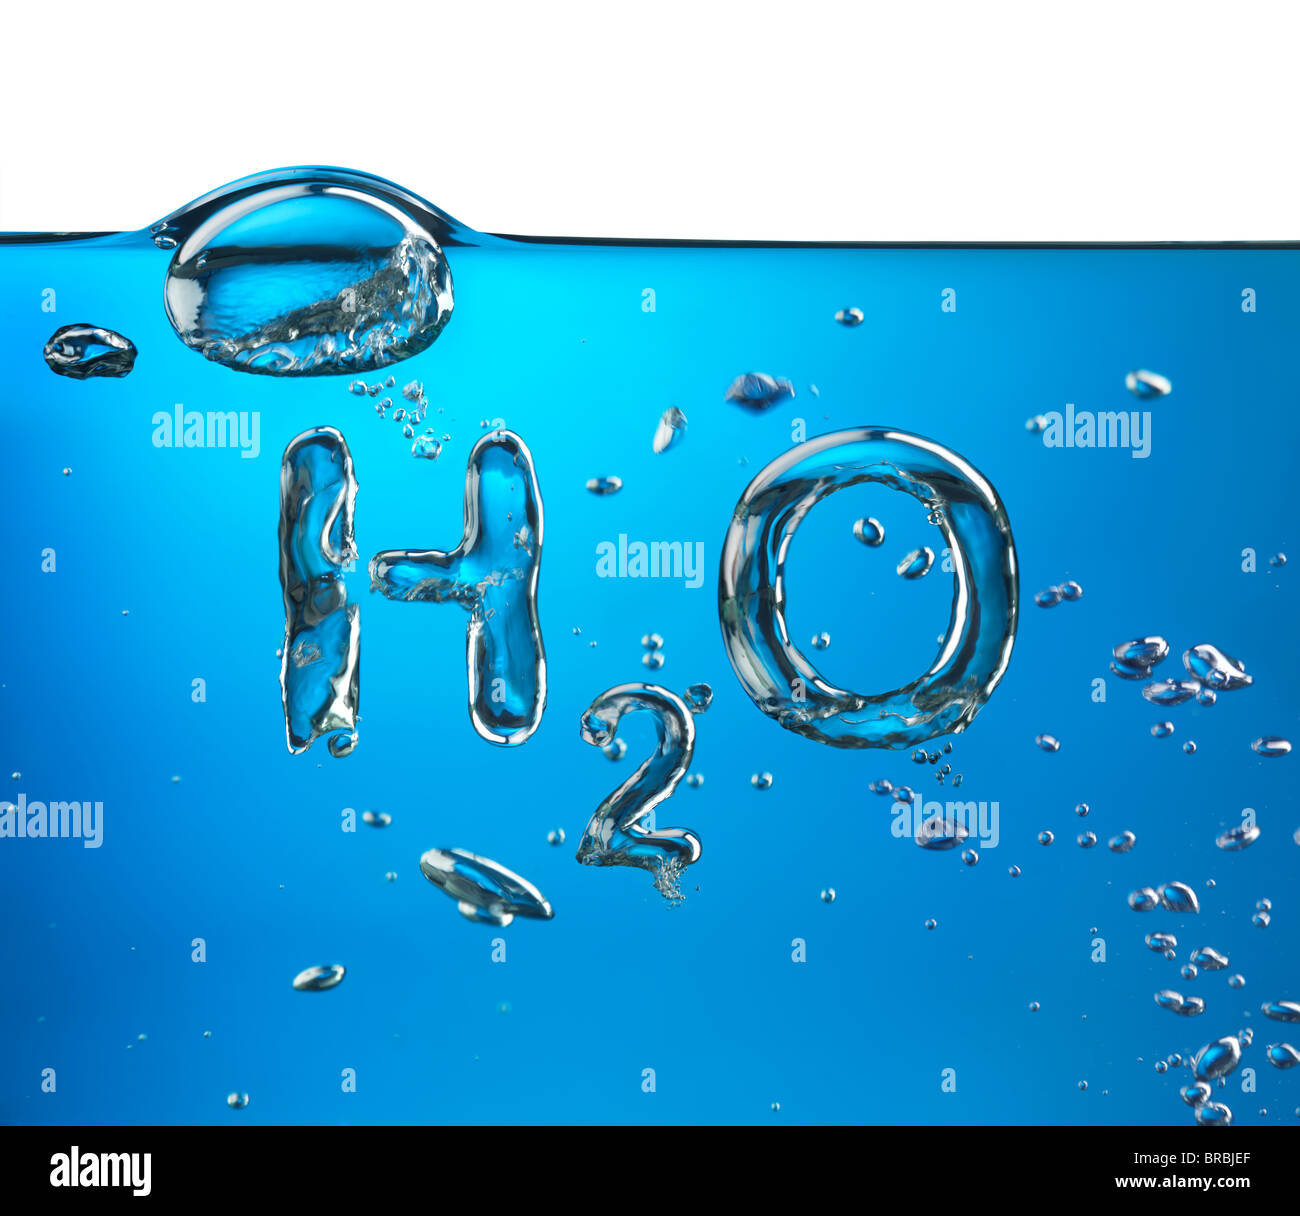 Lizenz erhältlich unter MaximImages.com - Formel von Wasser H2O aus Sauerstoffblasen, Konzeptbild. Stockfoto